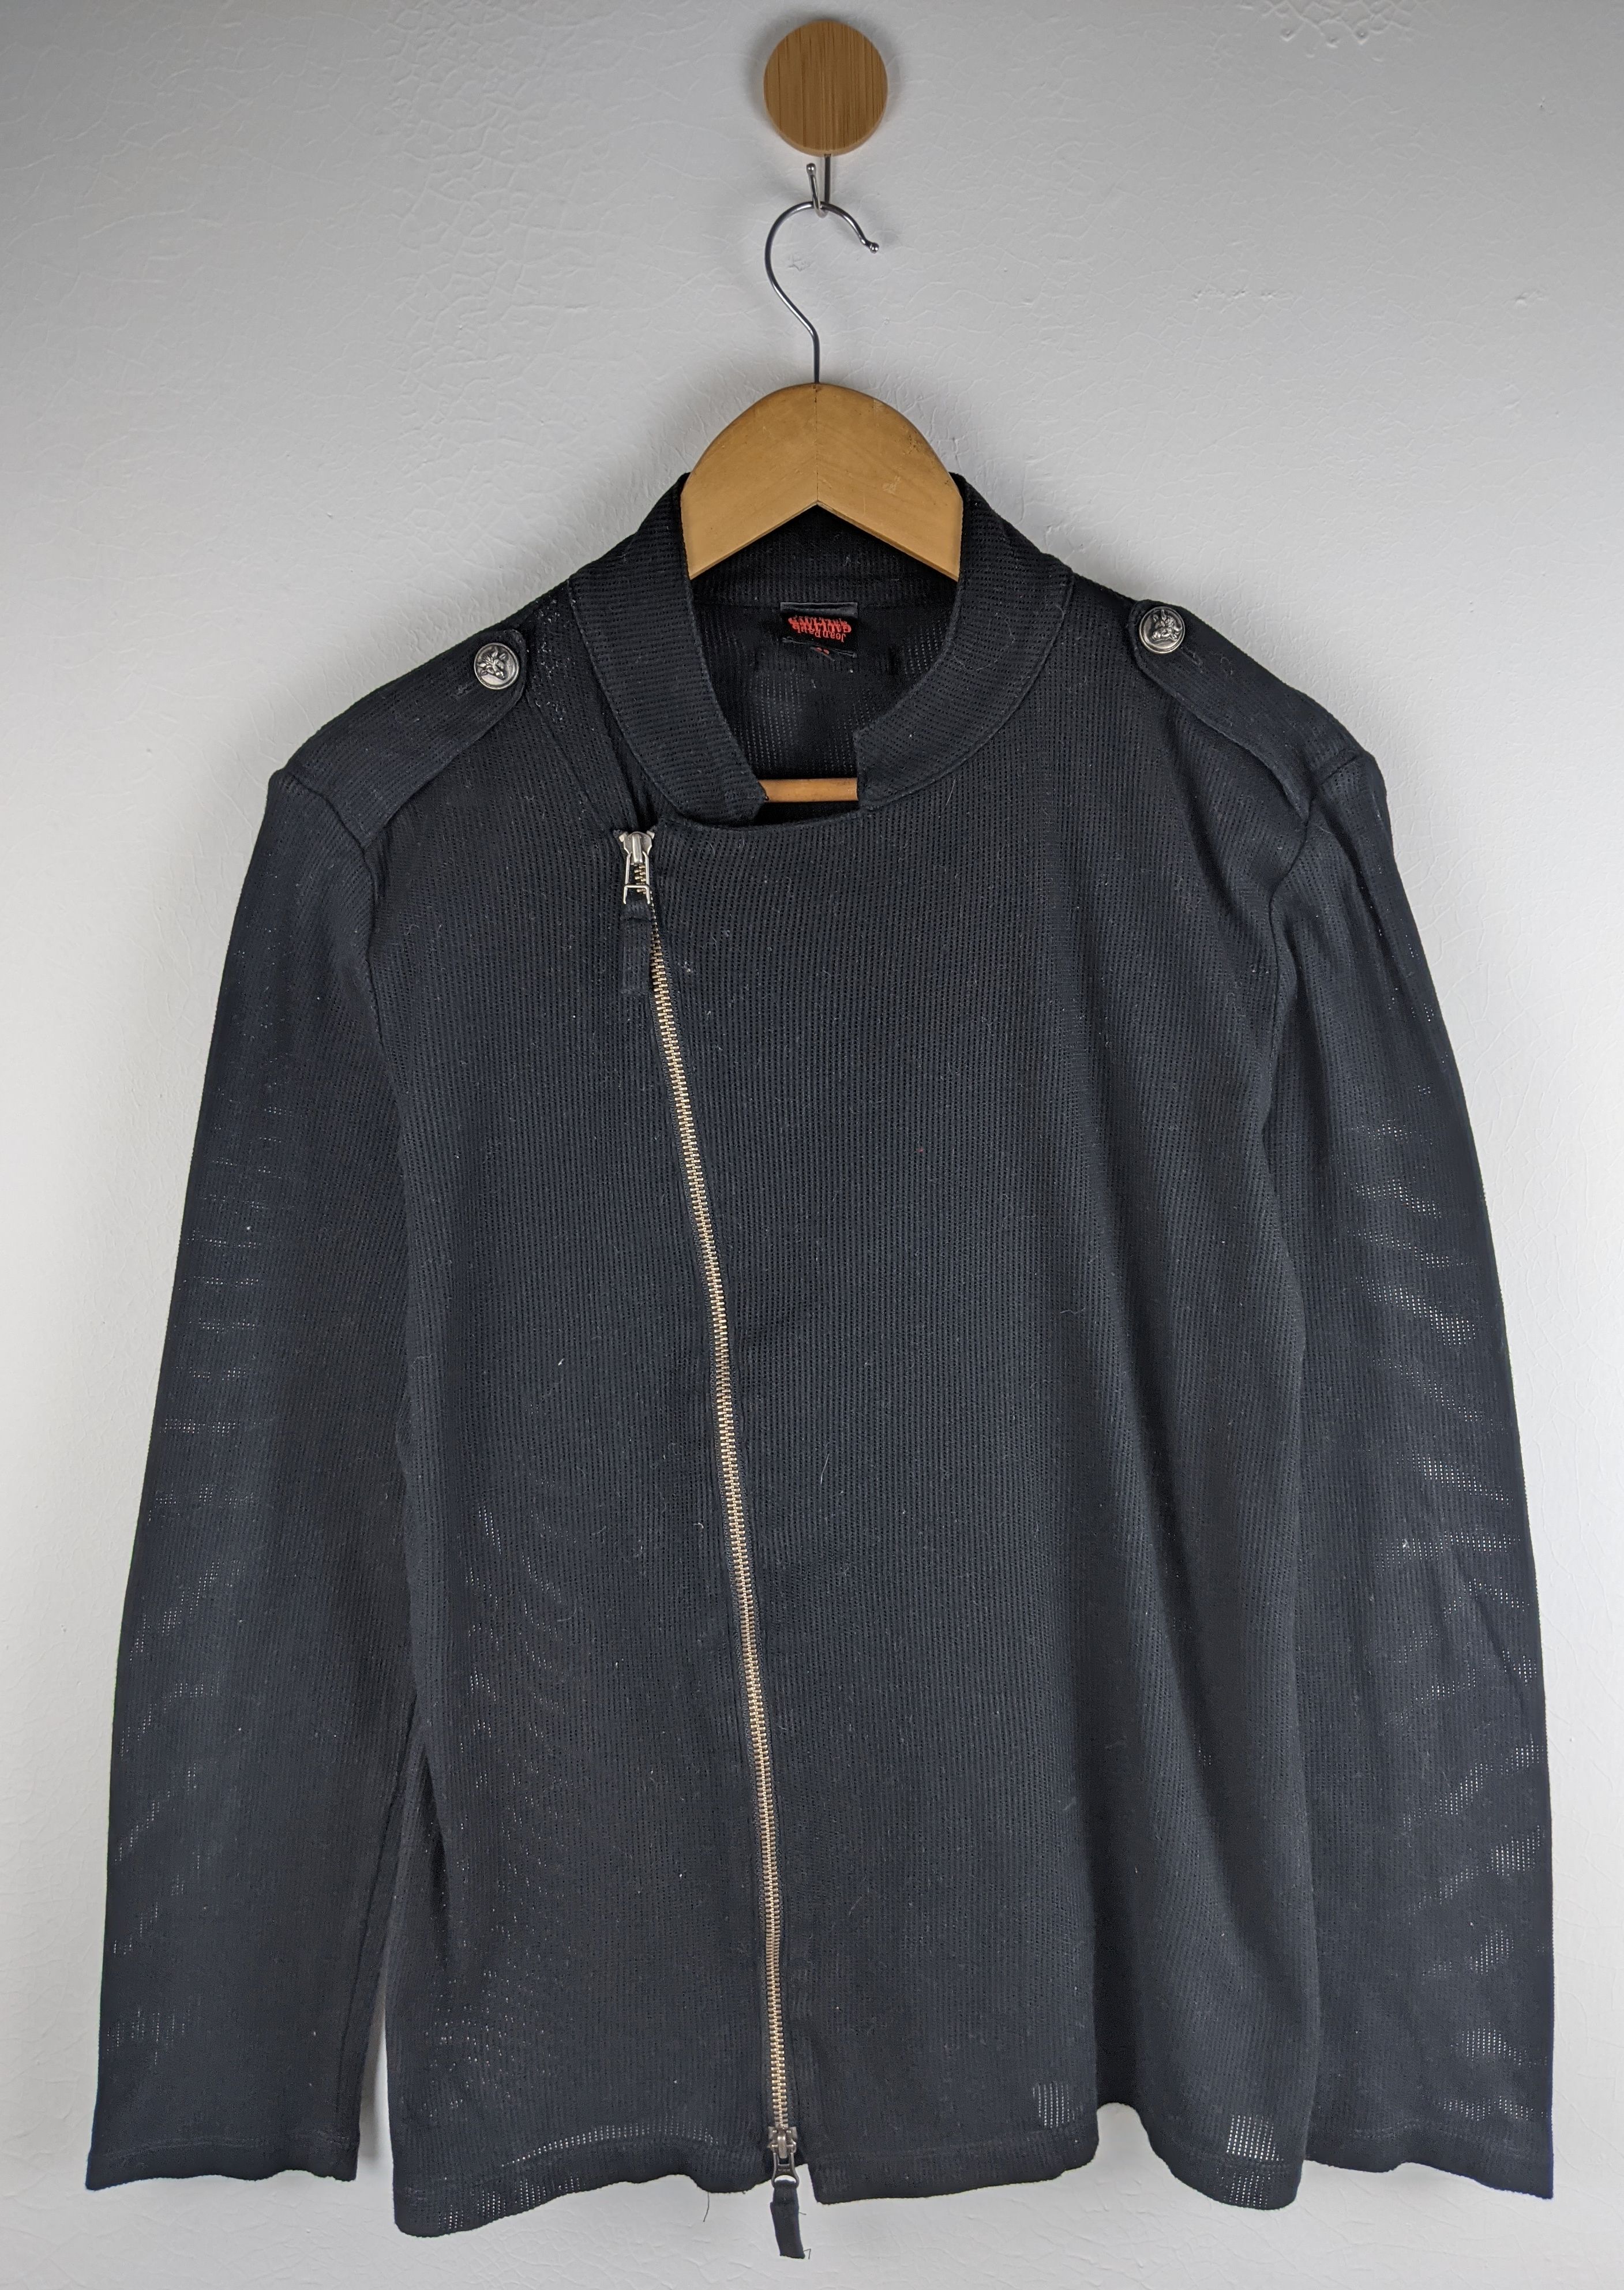 Jean Paul Gaultier Zipper Jacket - 1